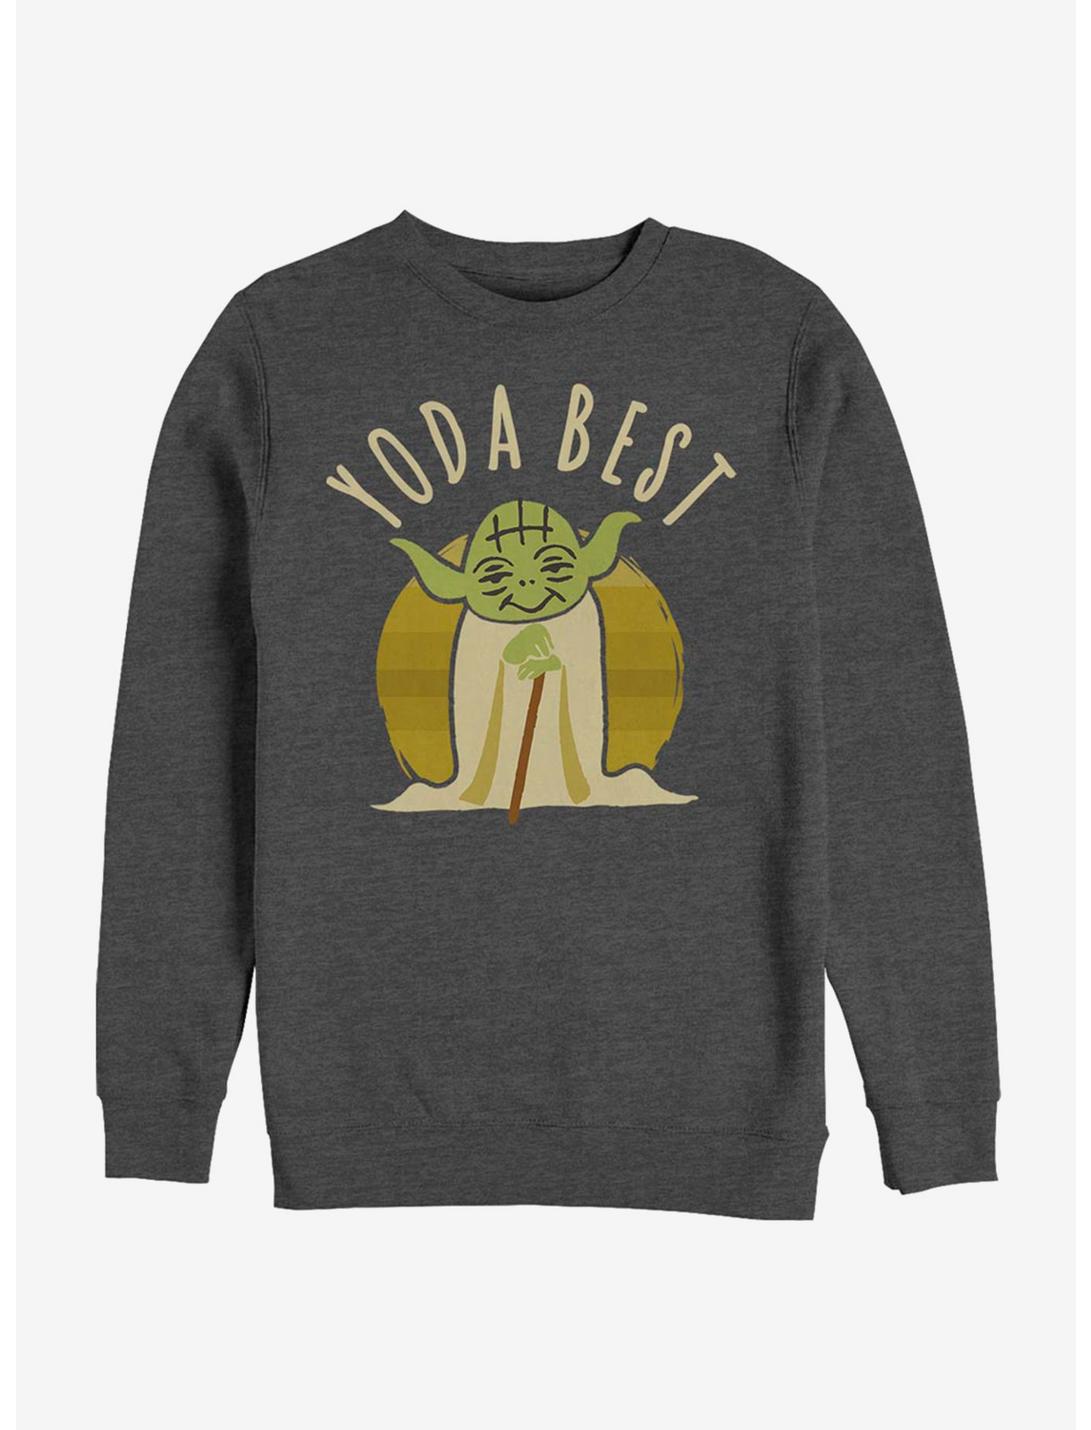 Star Wars Best Yoda Says Sweatshirt , CHAR HTR, hi-res